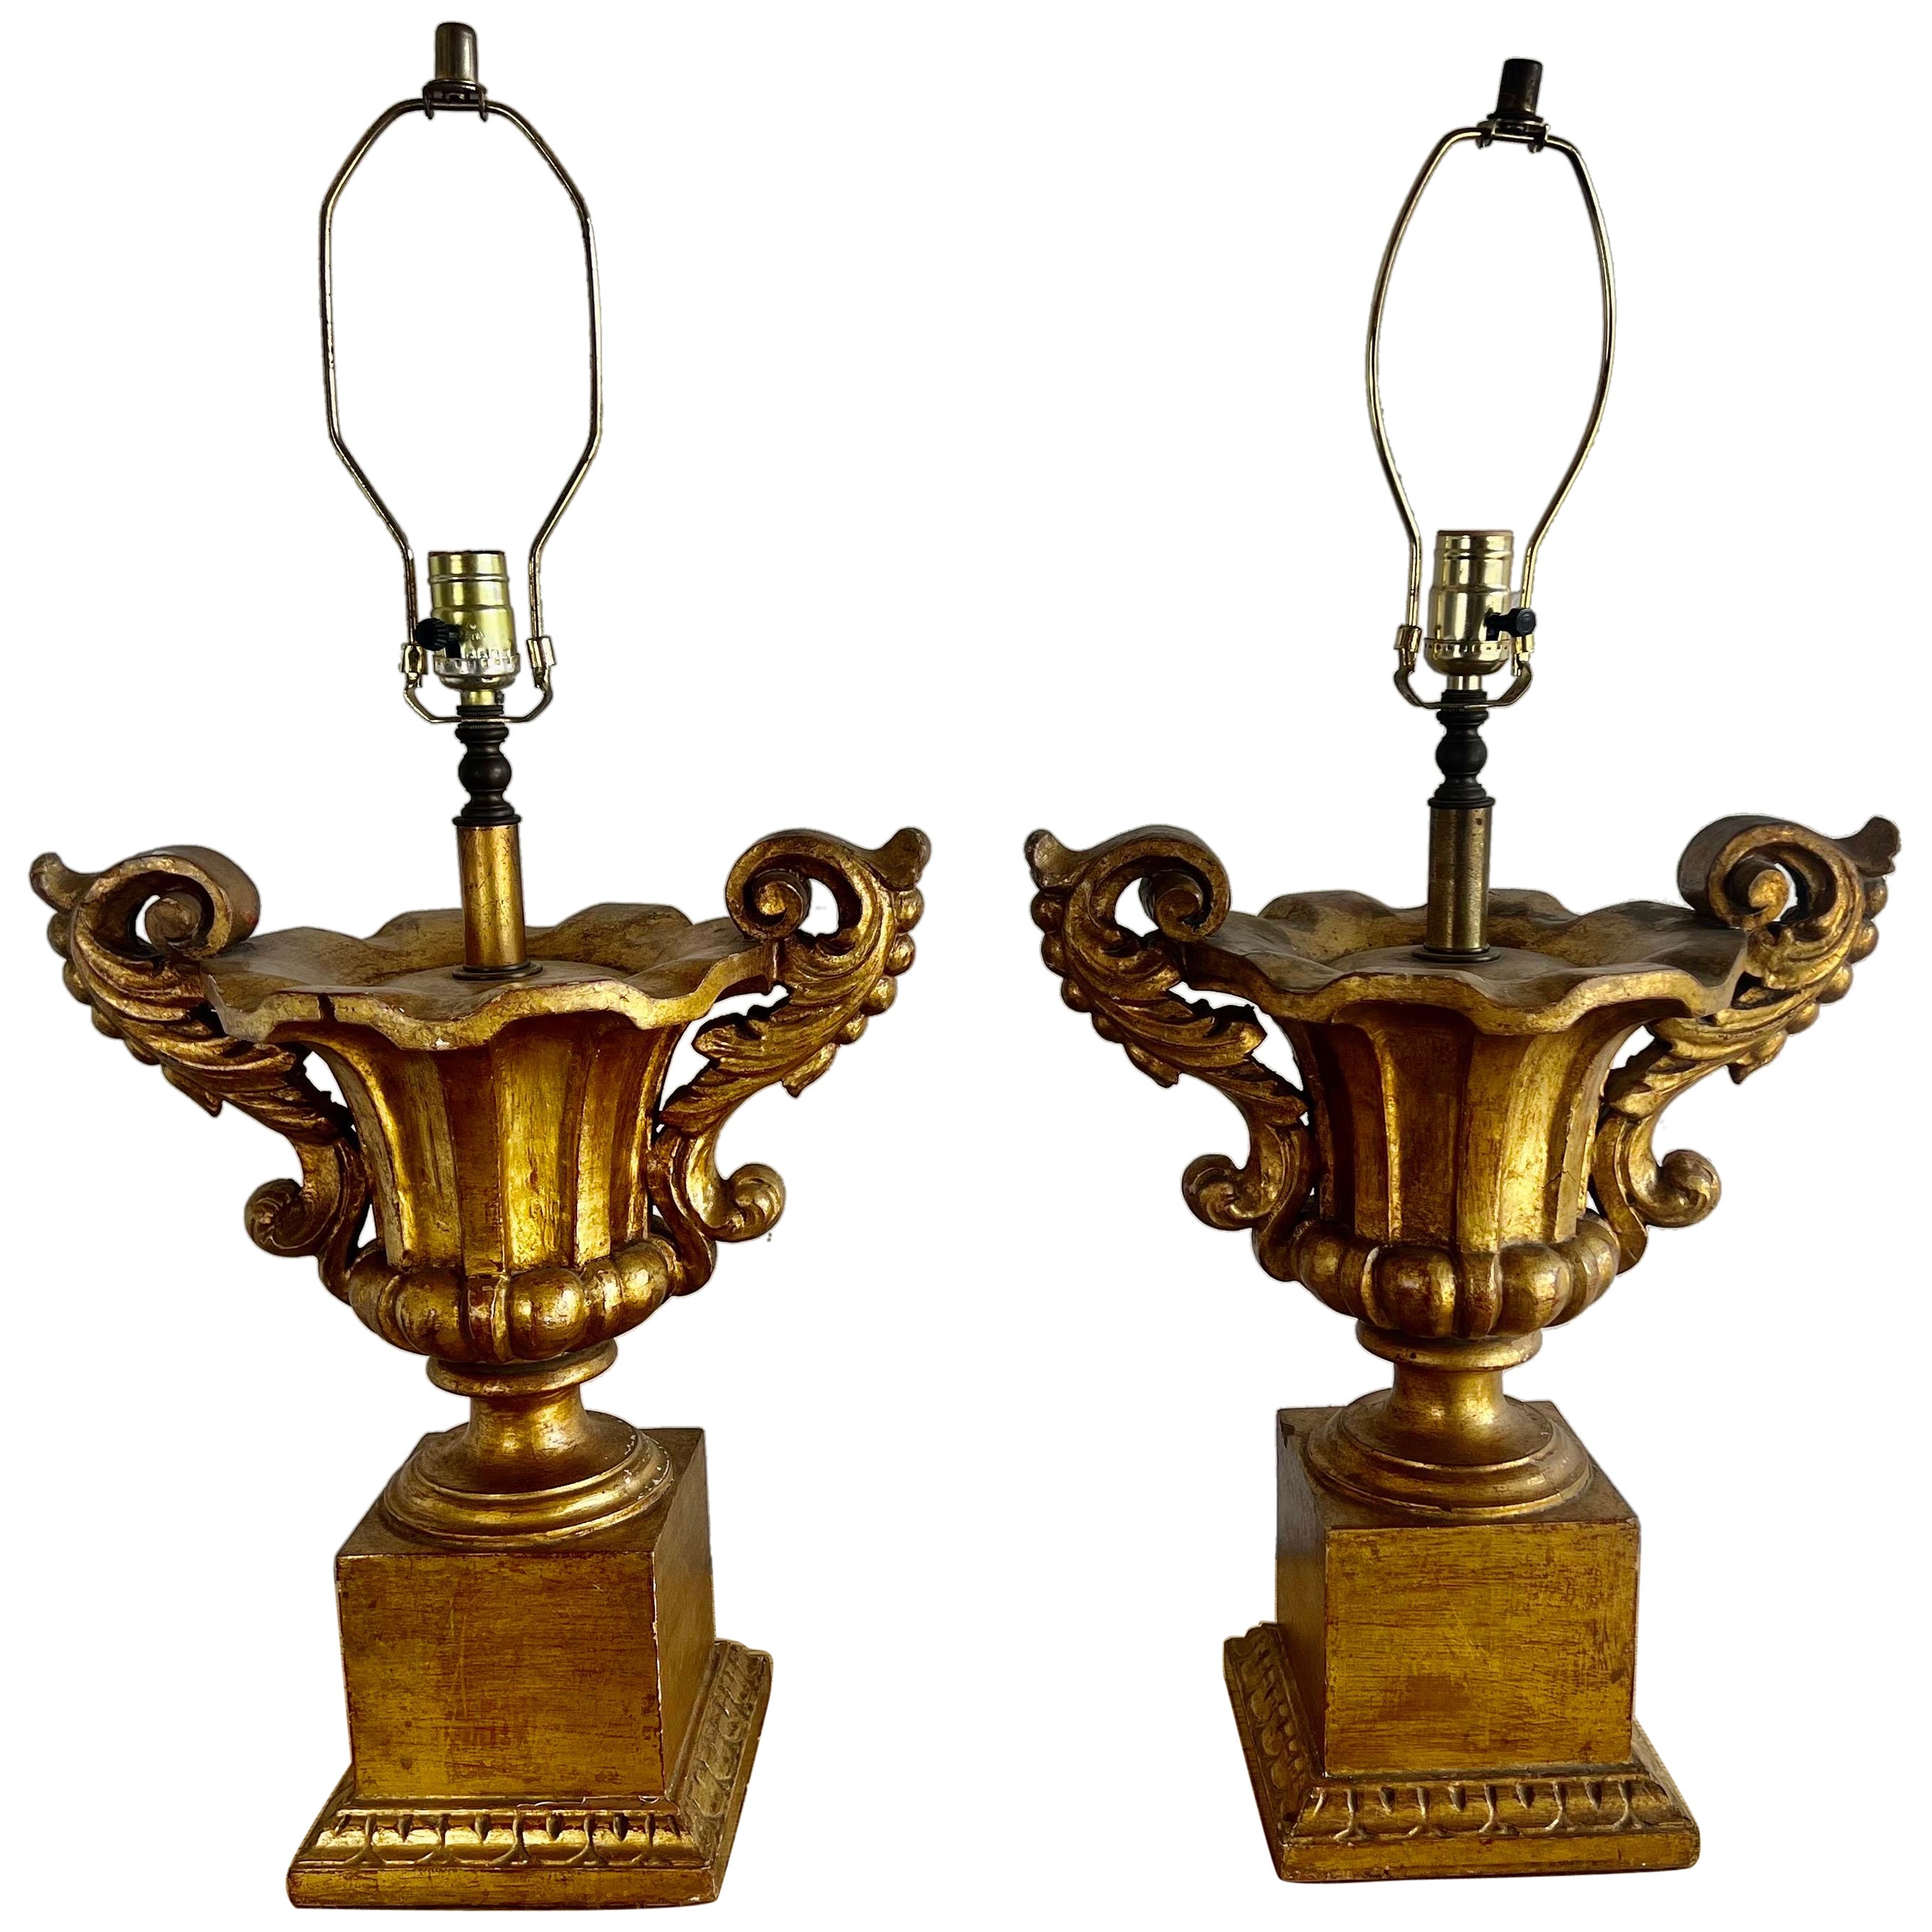 Paire de lampes-urnes italiennes en bois doré de style néoclassique, vers 1930